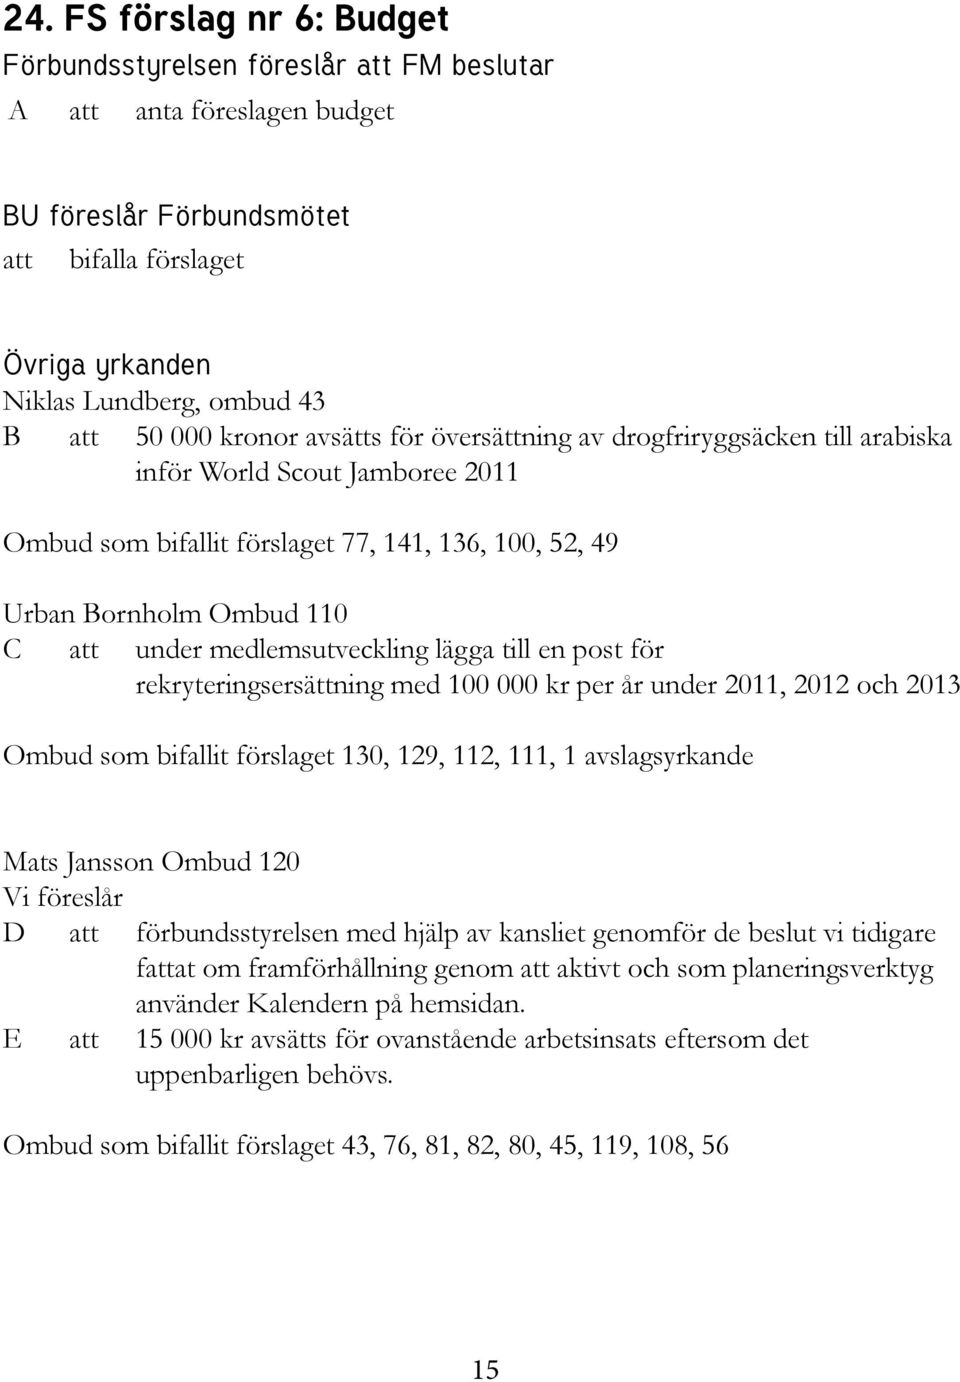 medlemsutveckling lägga till en post för rekryteringsersättning med 100 000 kr per år under 2011, 2012 och 2013 Ombud som bifallit förslaget 130, 129, 112, 111, 1 avslagsyrkande Mats Jansson Ombud